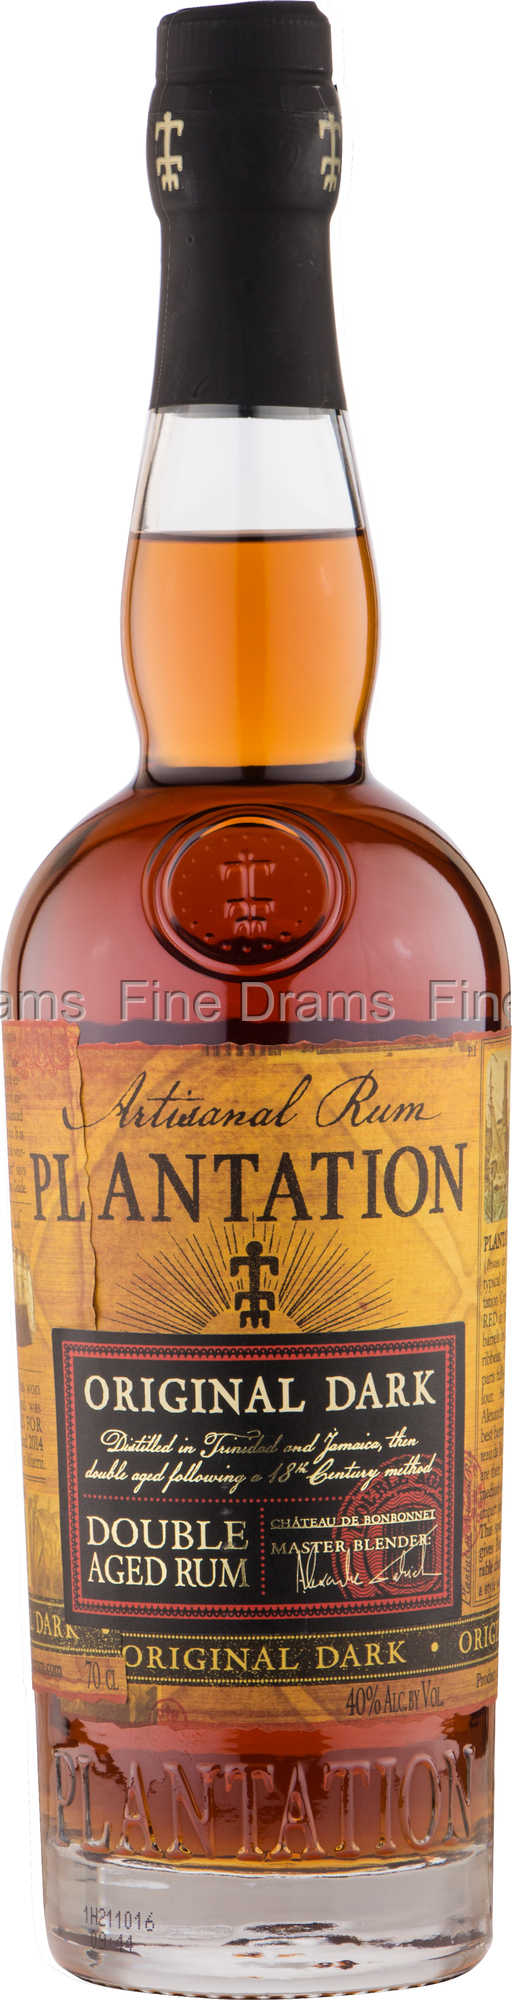 Dark Original Rum Plantation